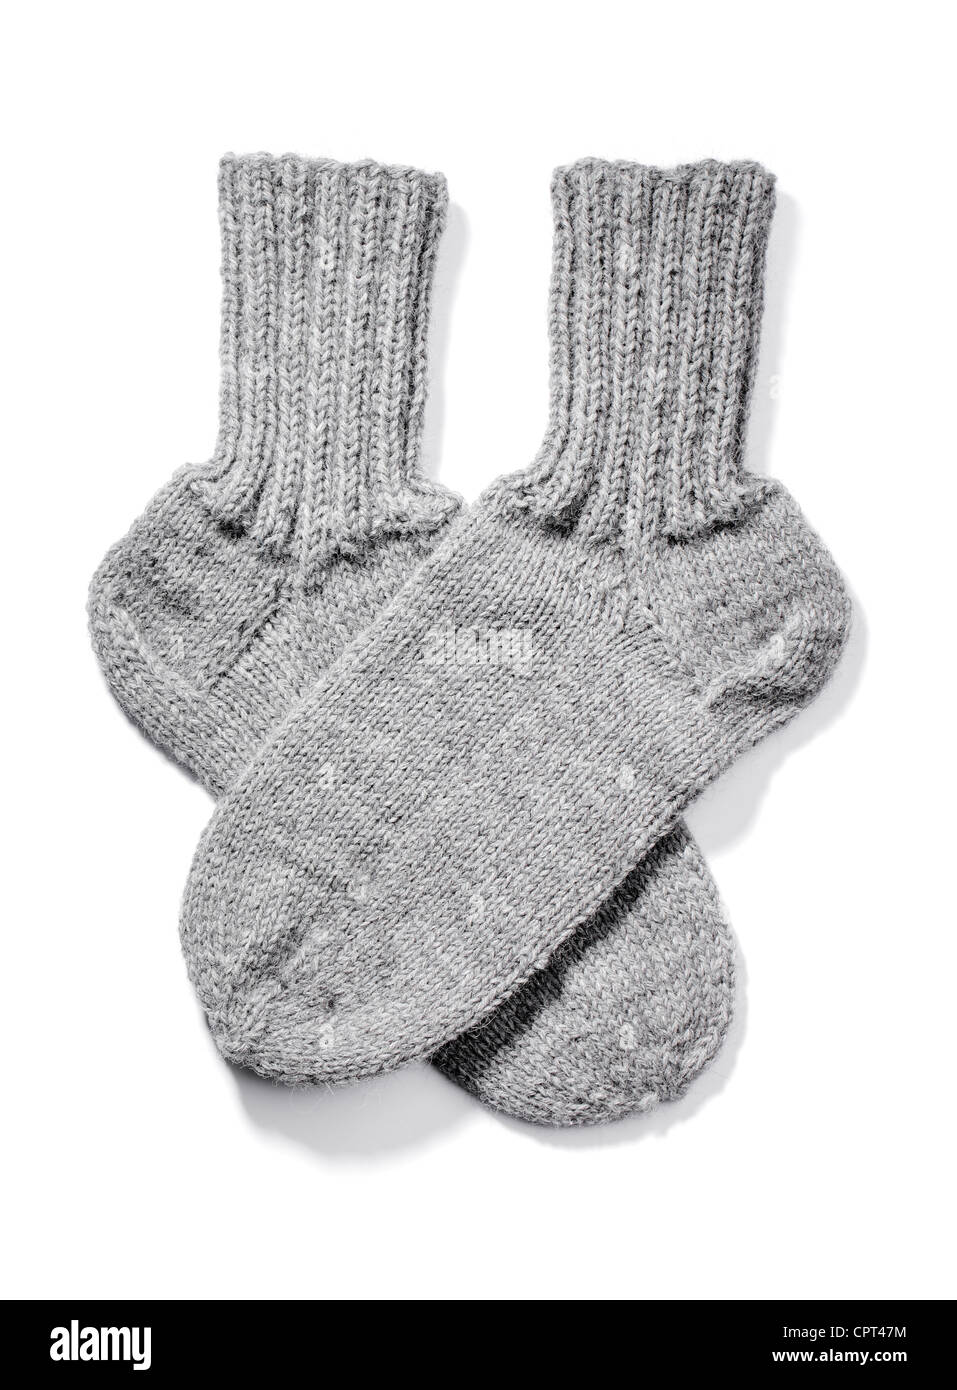 Tejidos a Mano cálida calcetines de lana aislado en blanco con sombra natural. Foto de stock